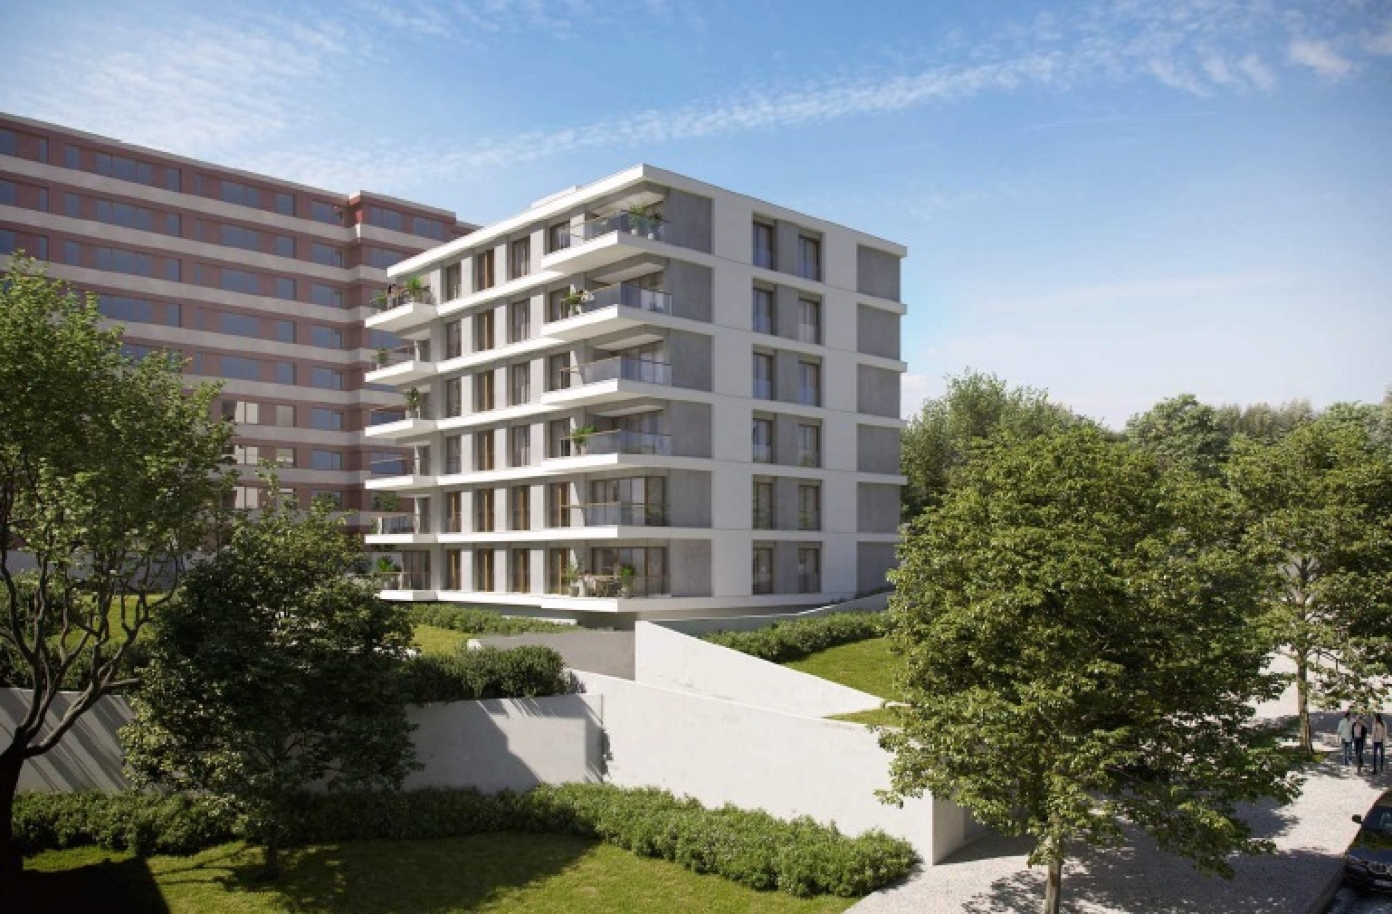 Venda apartamento novo T4 com varanda, Pinhais da Foz, Porto, Portugal_121429